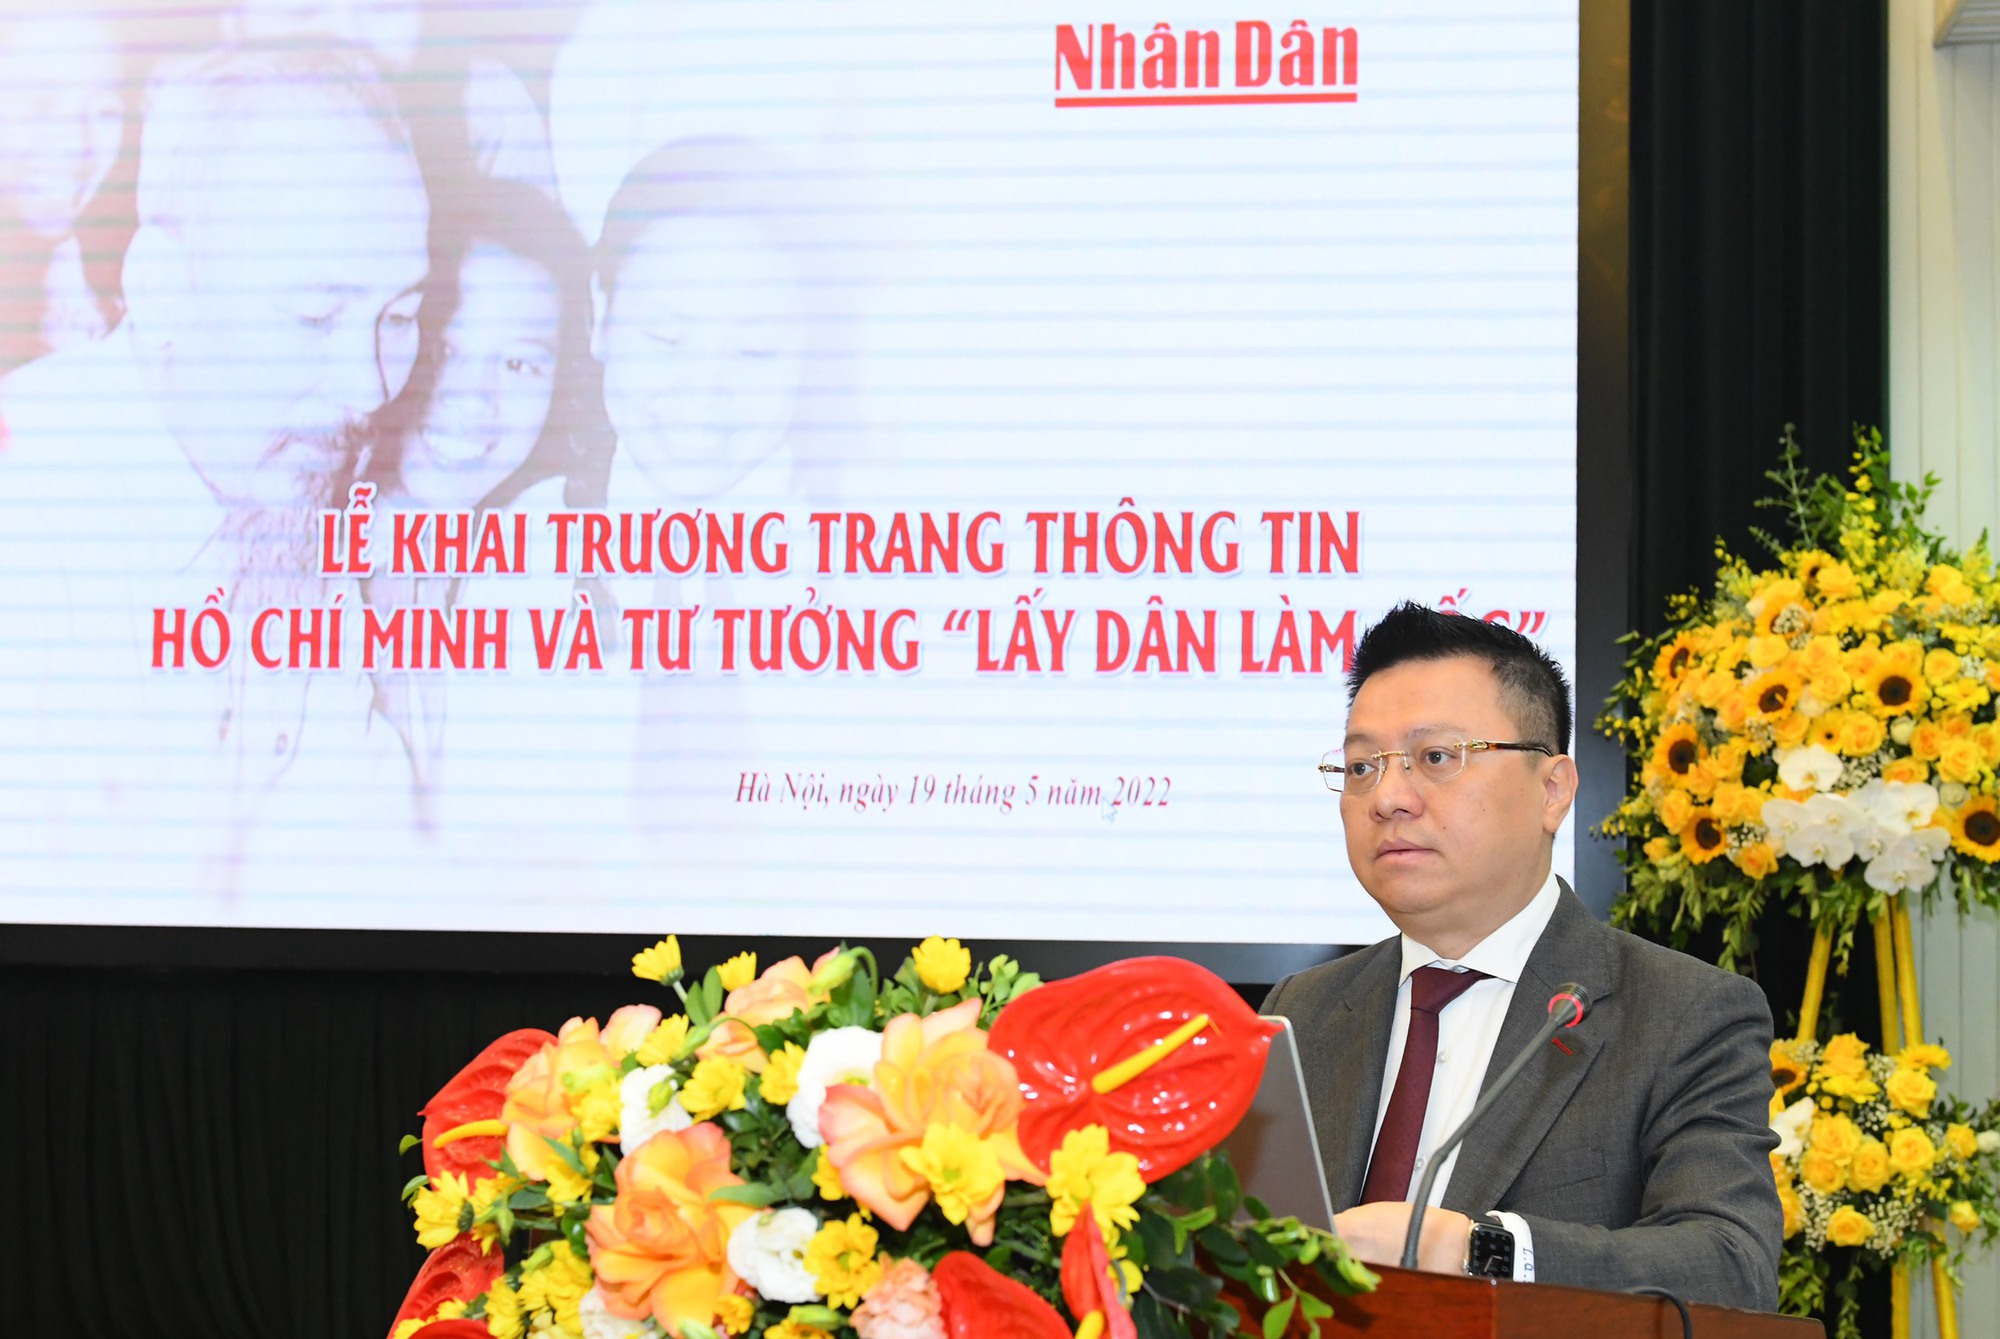 Khai trương Trang thông tin đặc biệt Hồ Chí Minh và tư tưởng “lấy dân làm gốc” - Ảnh 2.